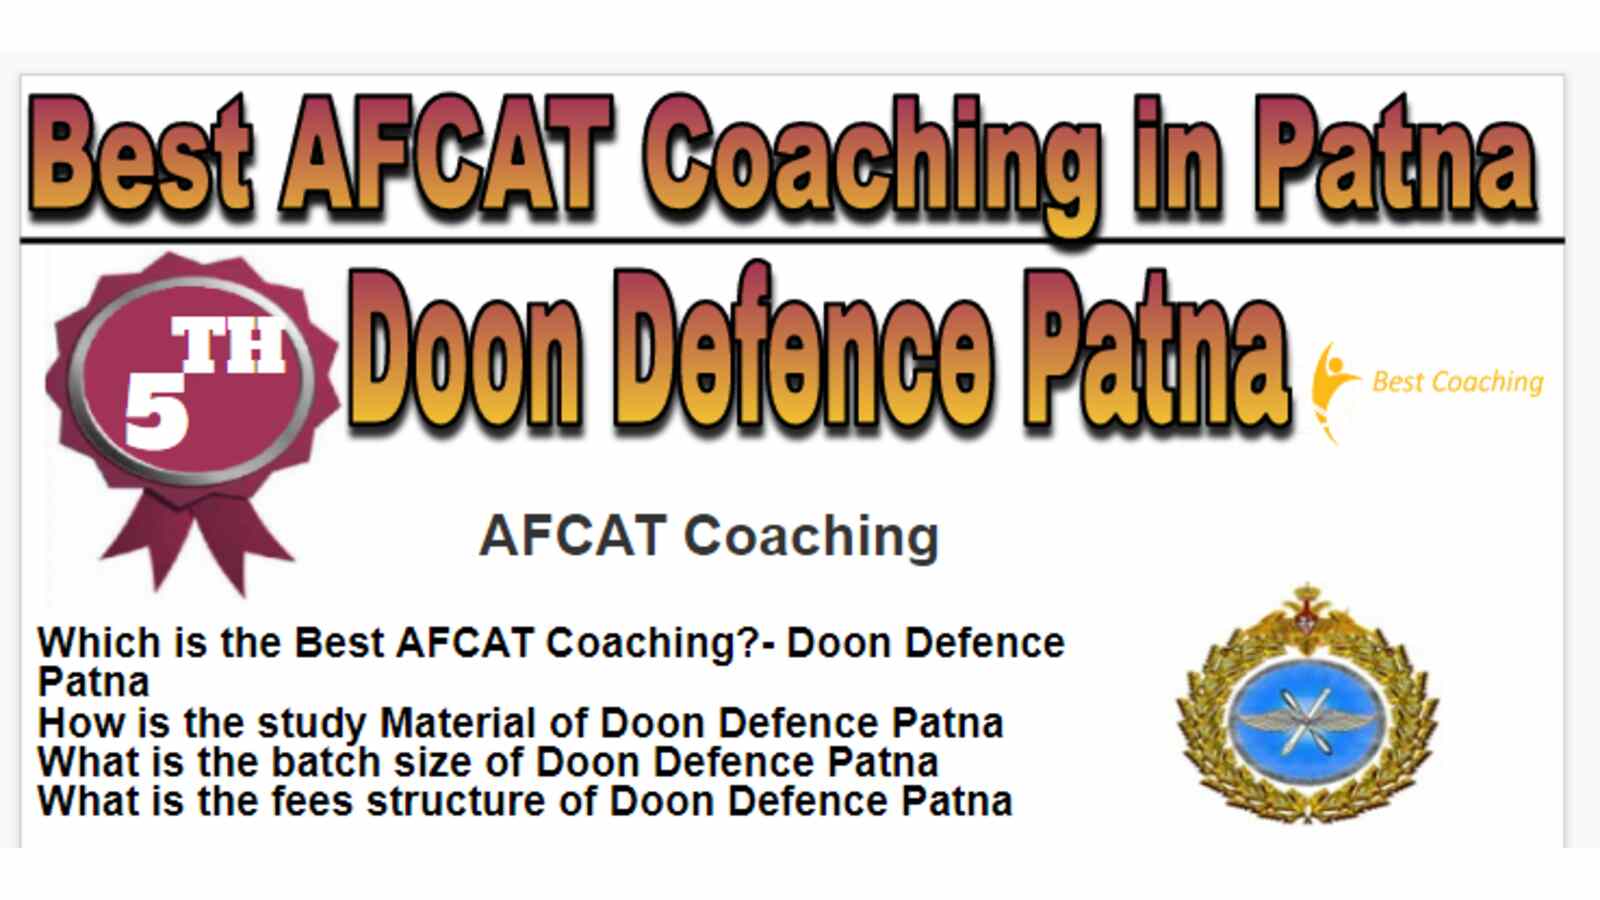 Rank 5 Best AFCAT Coaching in Patna